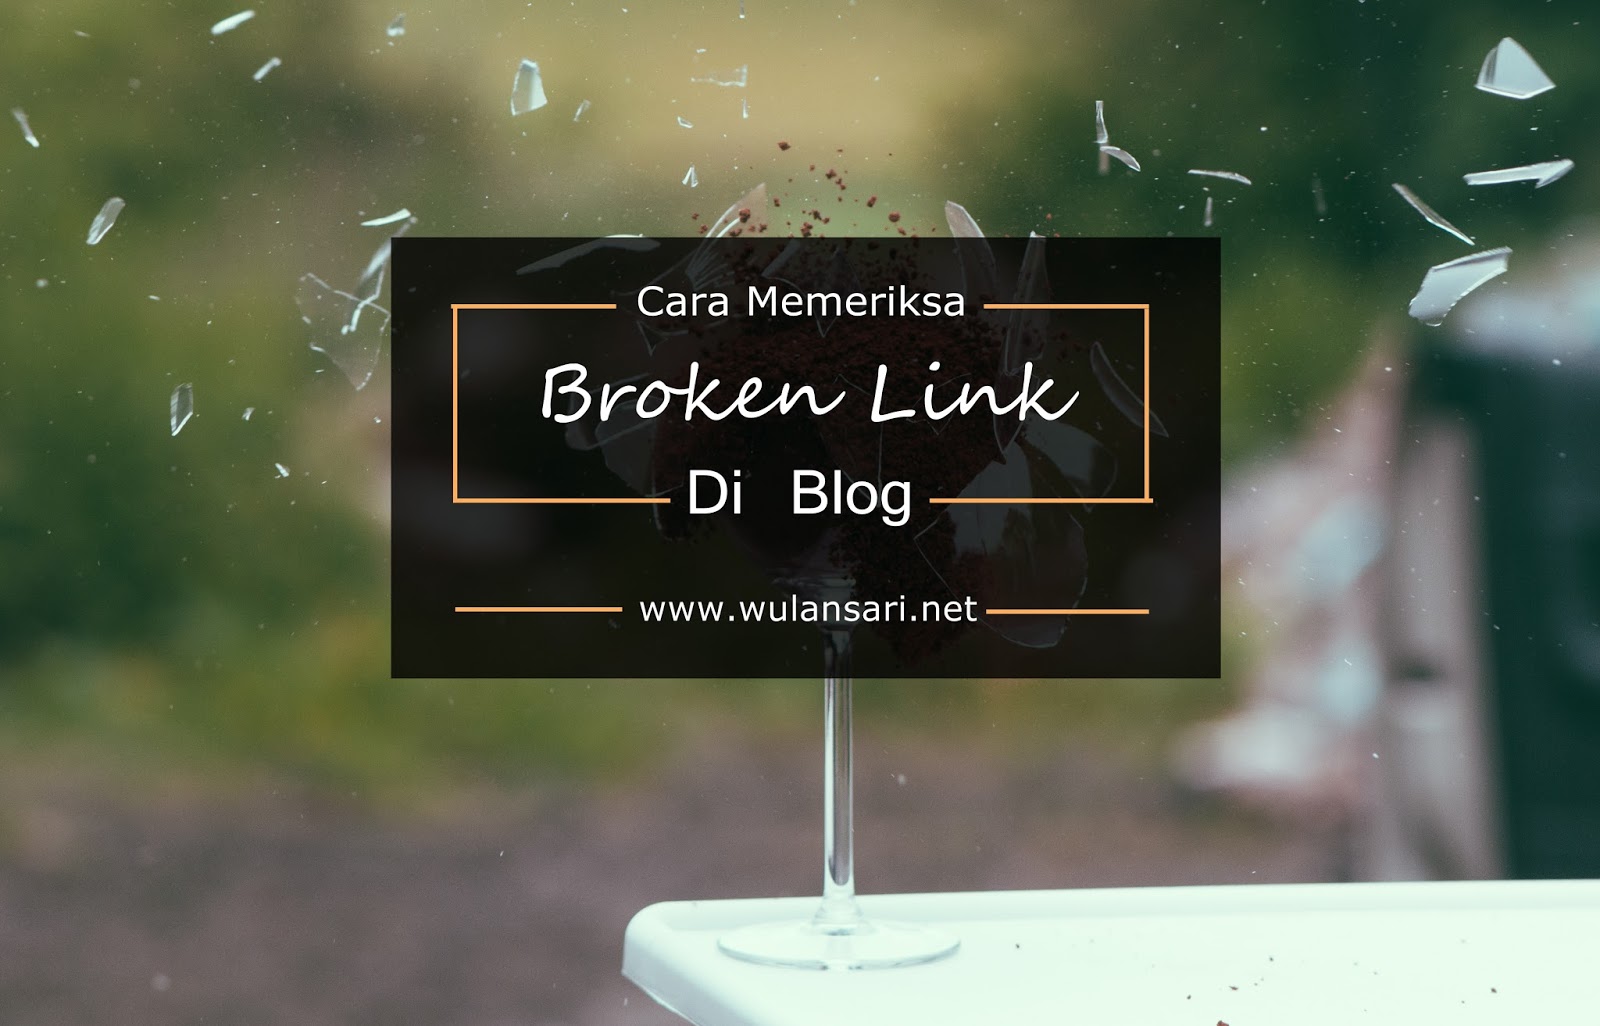 Cara Memeriksa Broken Link di Blog Dengan Mudah